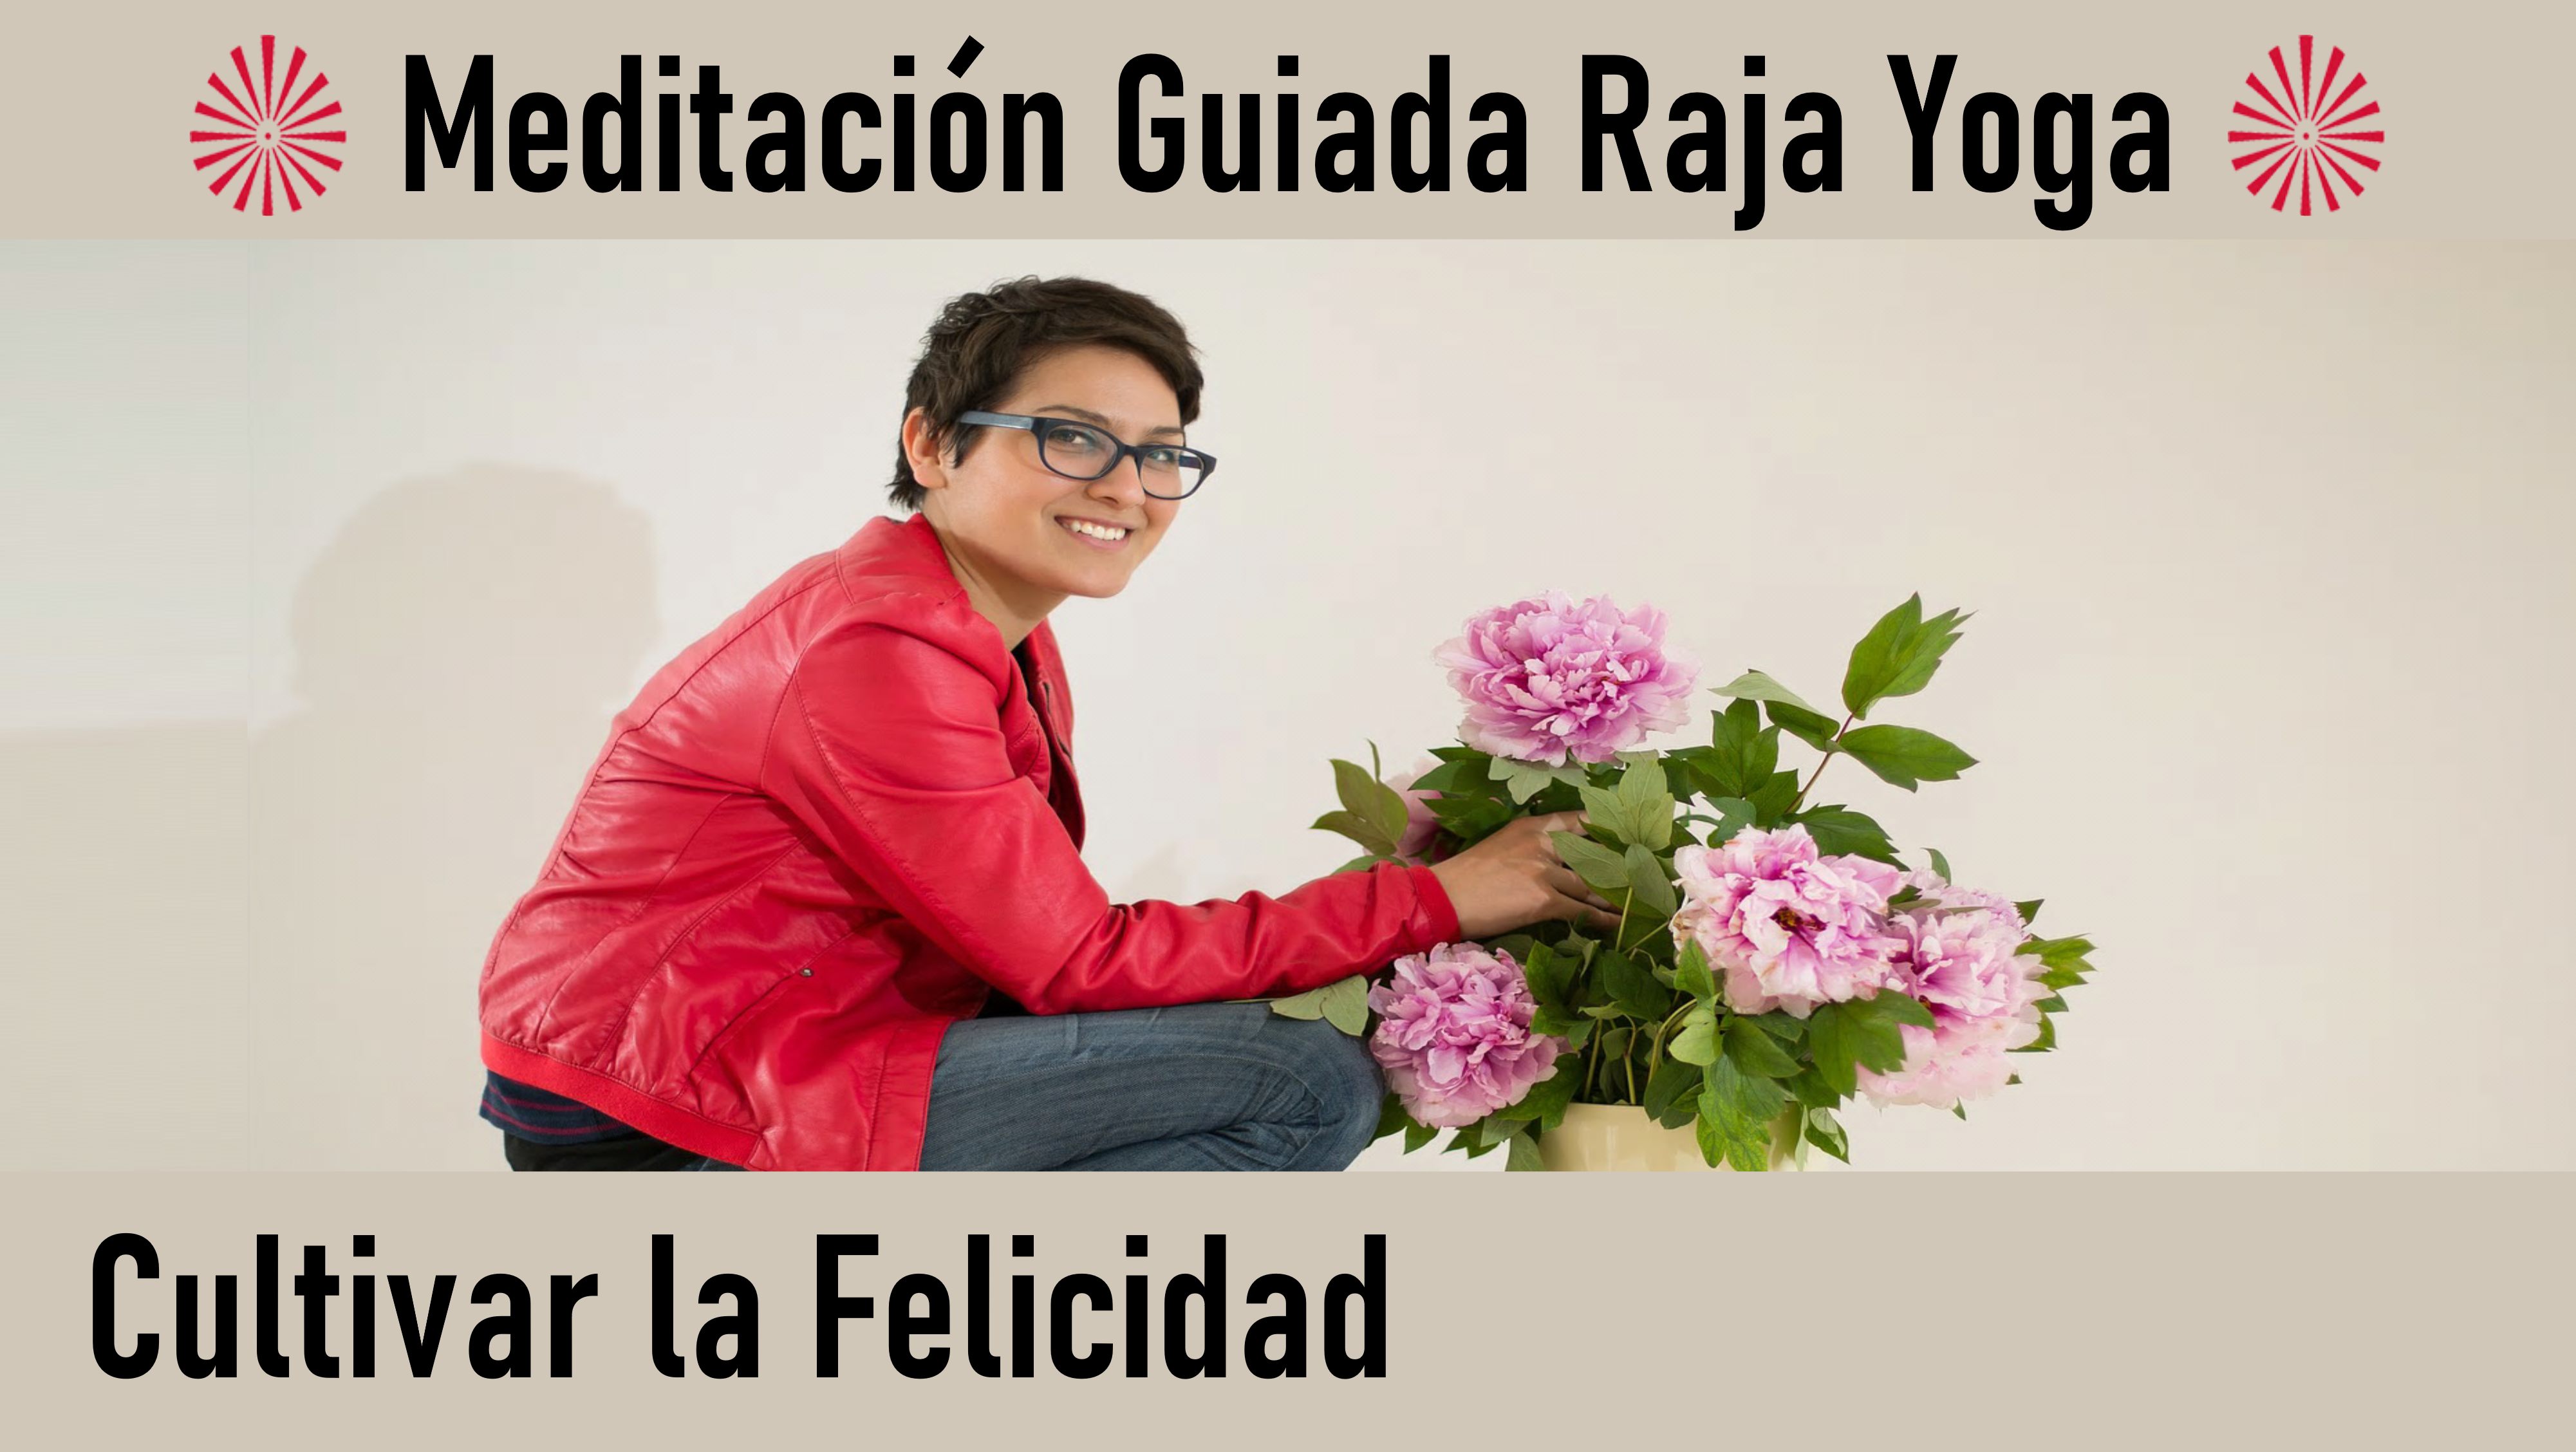 Meditación Raja Yoga: Cultivar la felicidad (25 Julio 2020) On-line desde Valencia